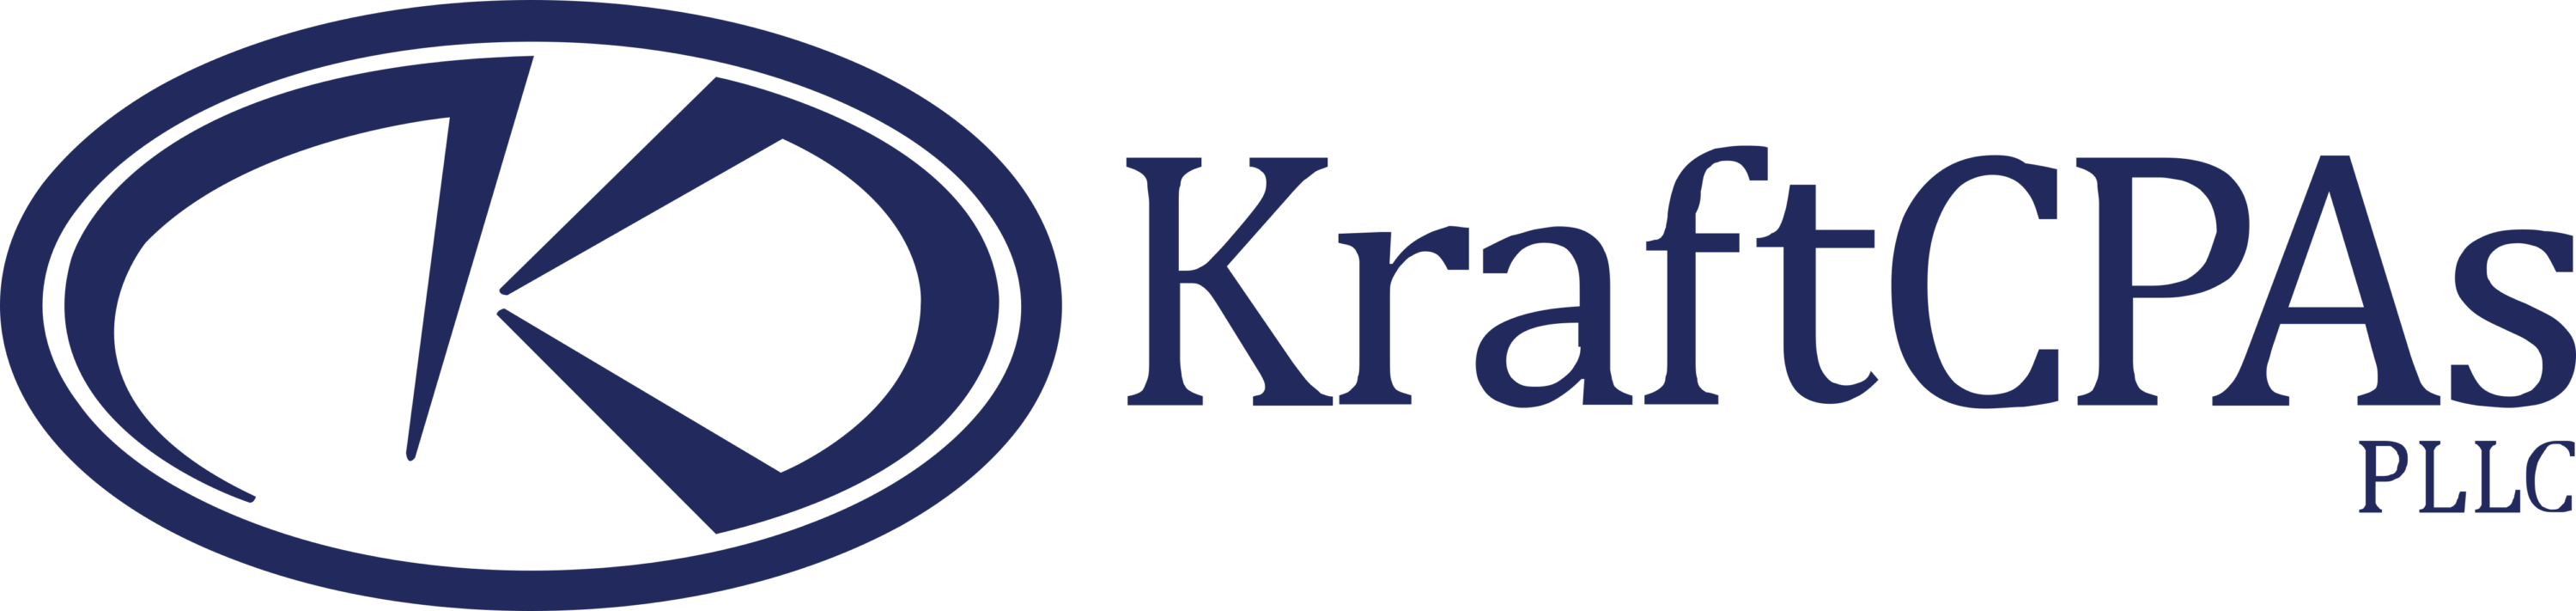 KraftCPAs PLLC Logo